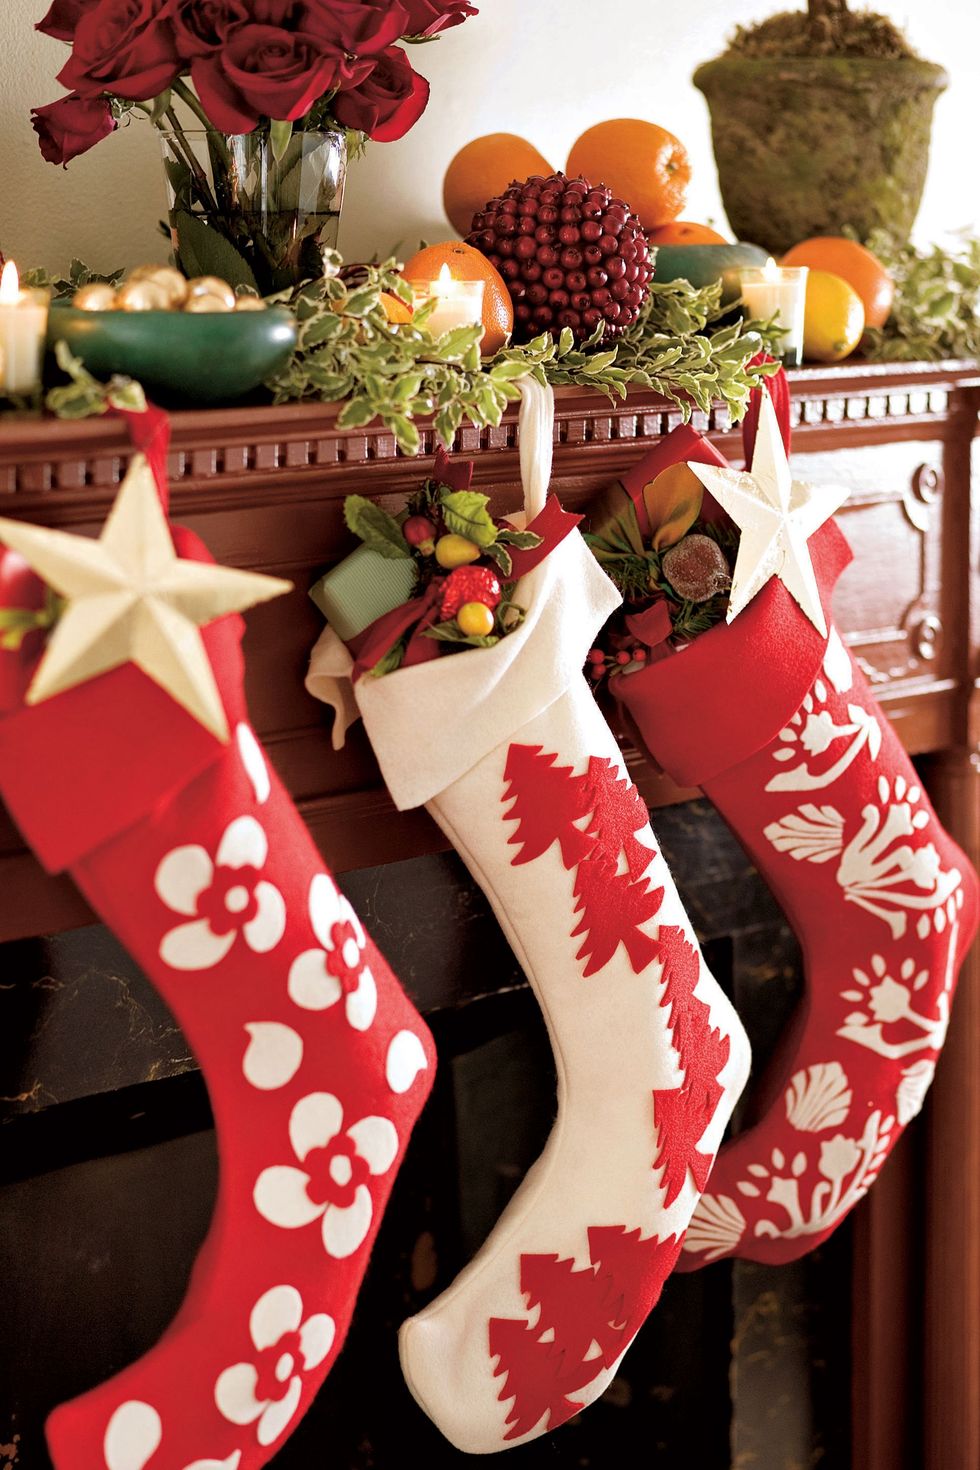 stocking decorating ideas felt stockings